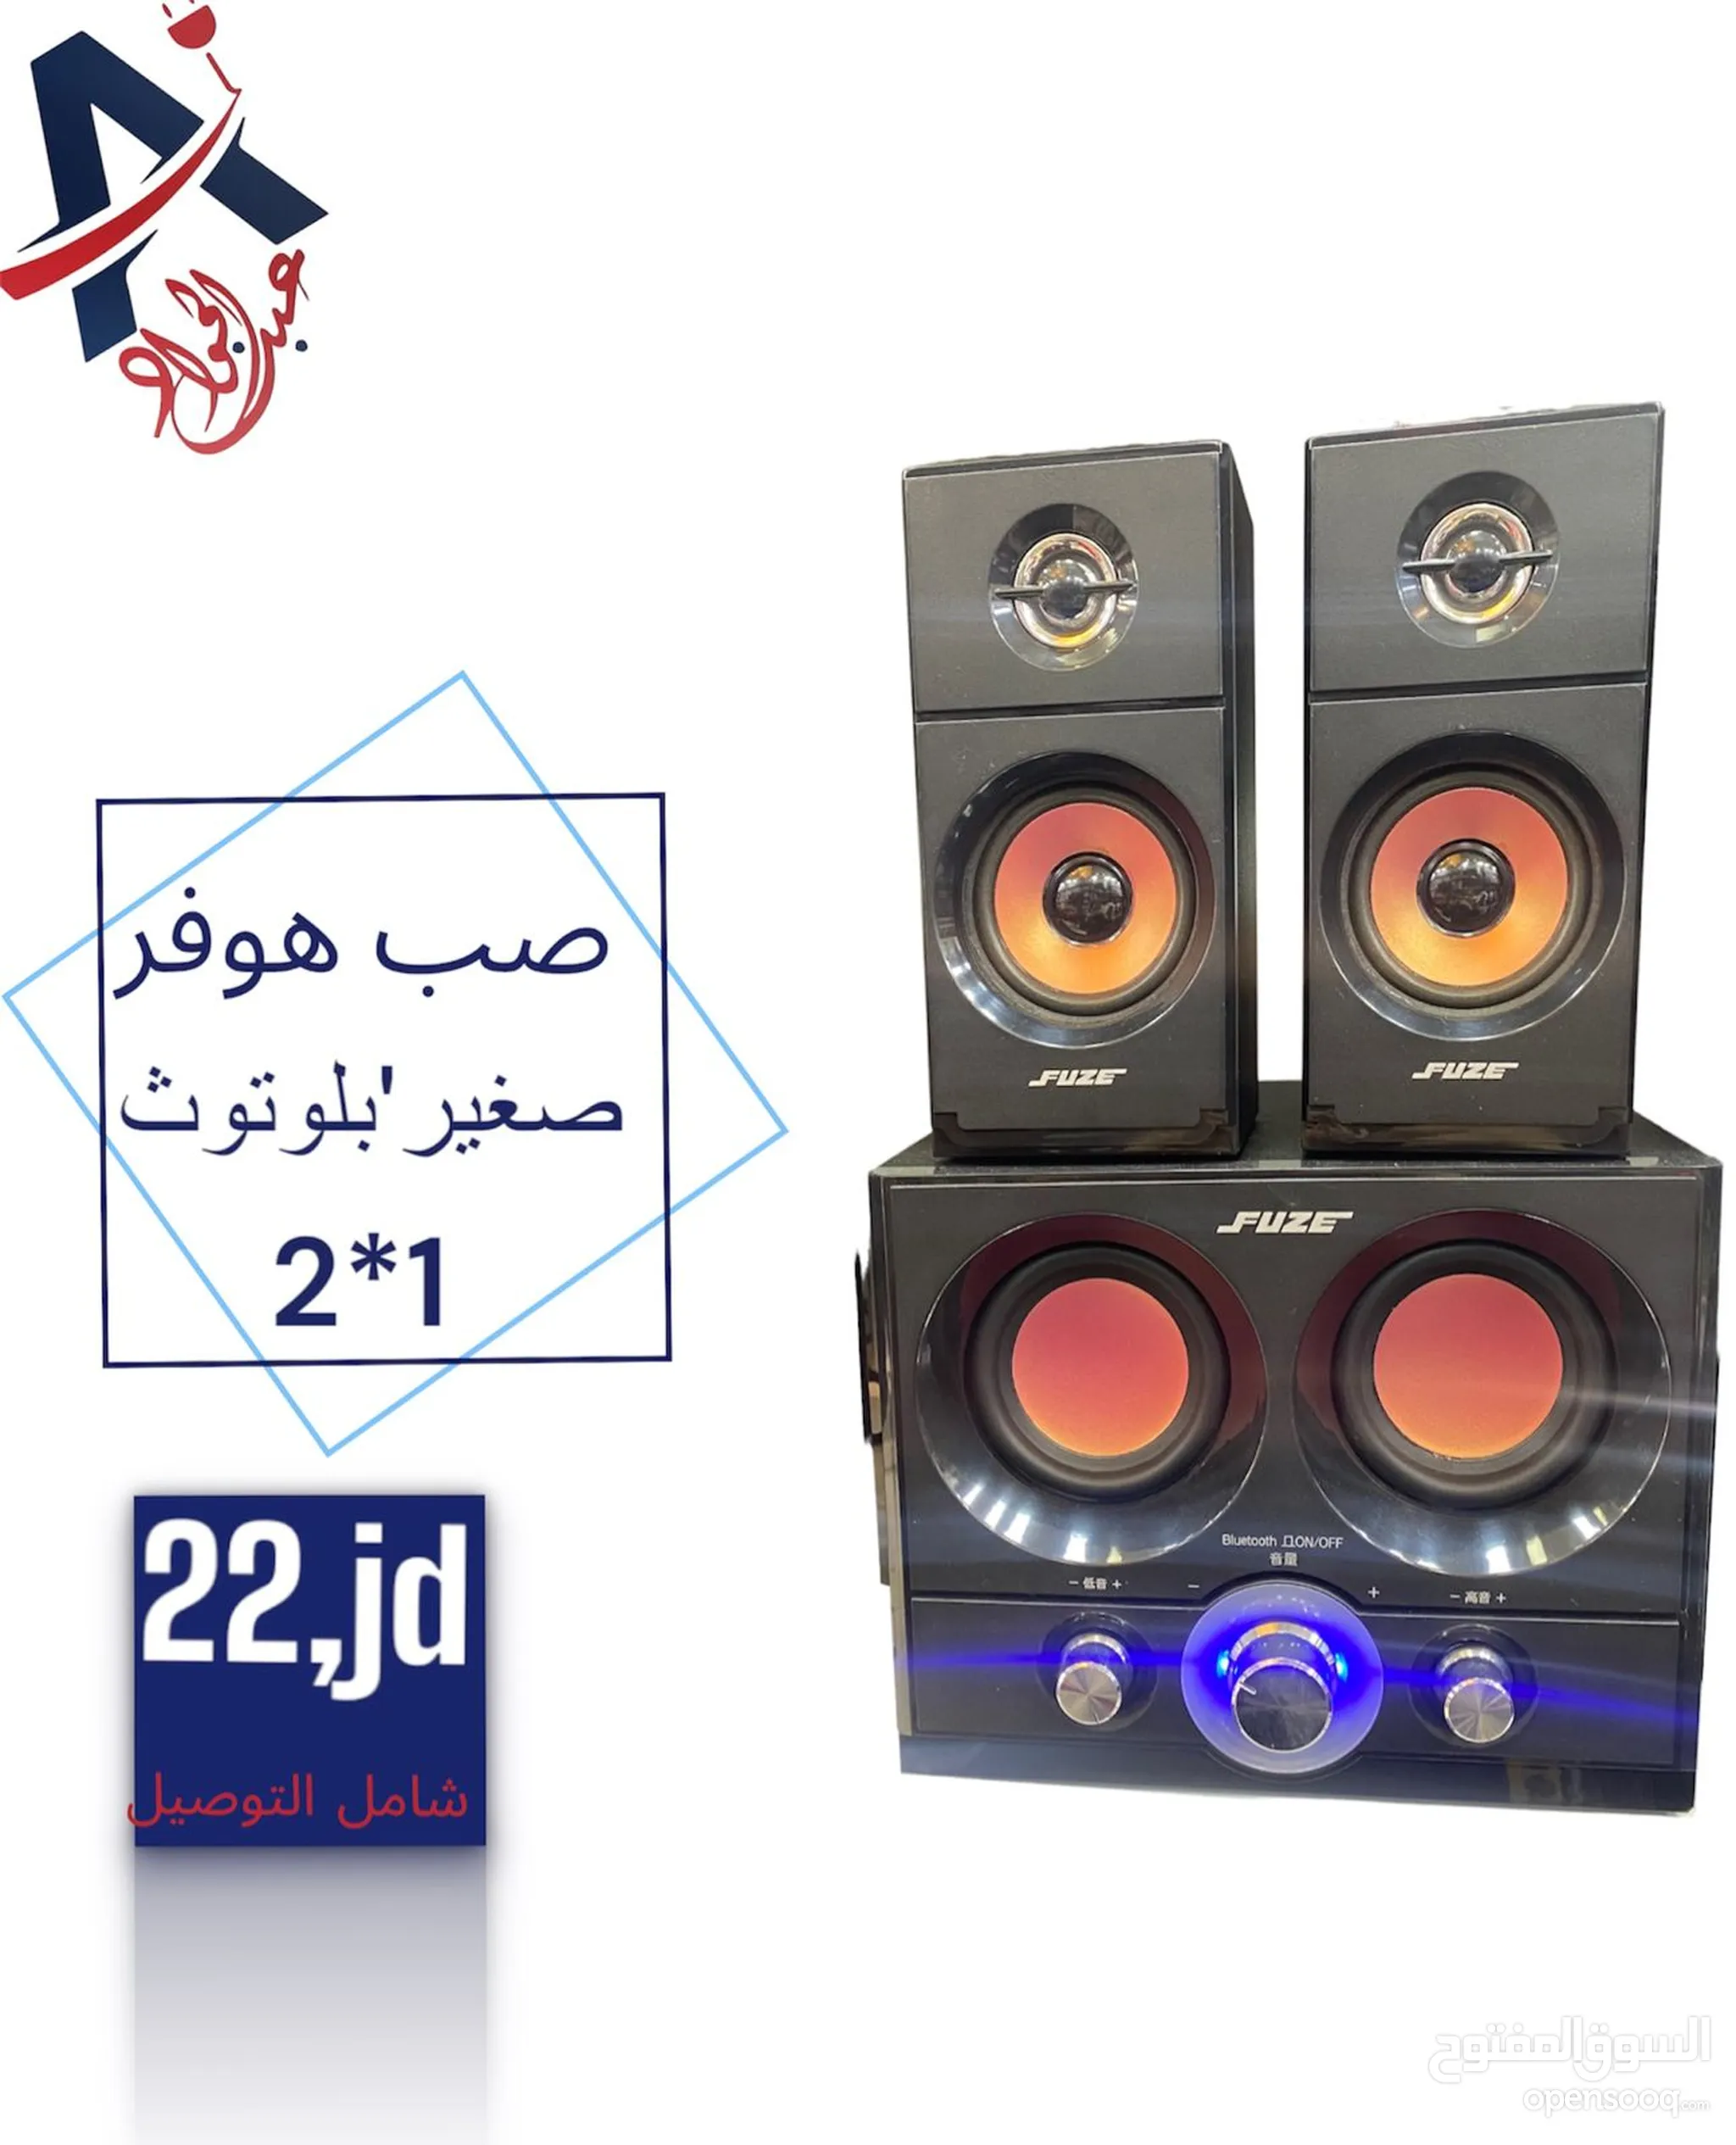 سماعات للبيع في الأردن : ستيريوهات : اجهزة دي جي : افضل سعر | السوق المفتوح